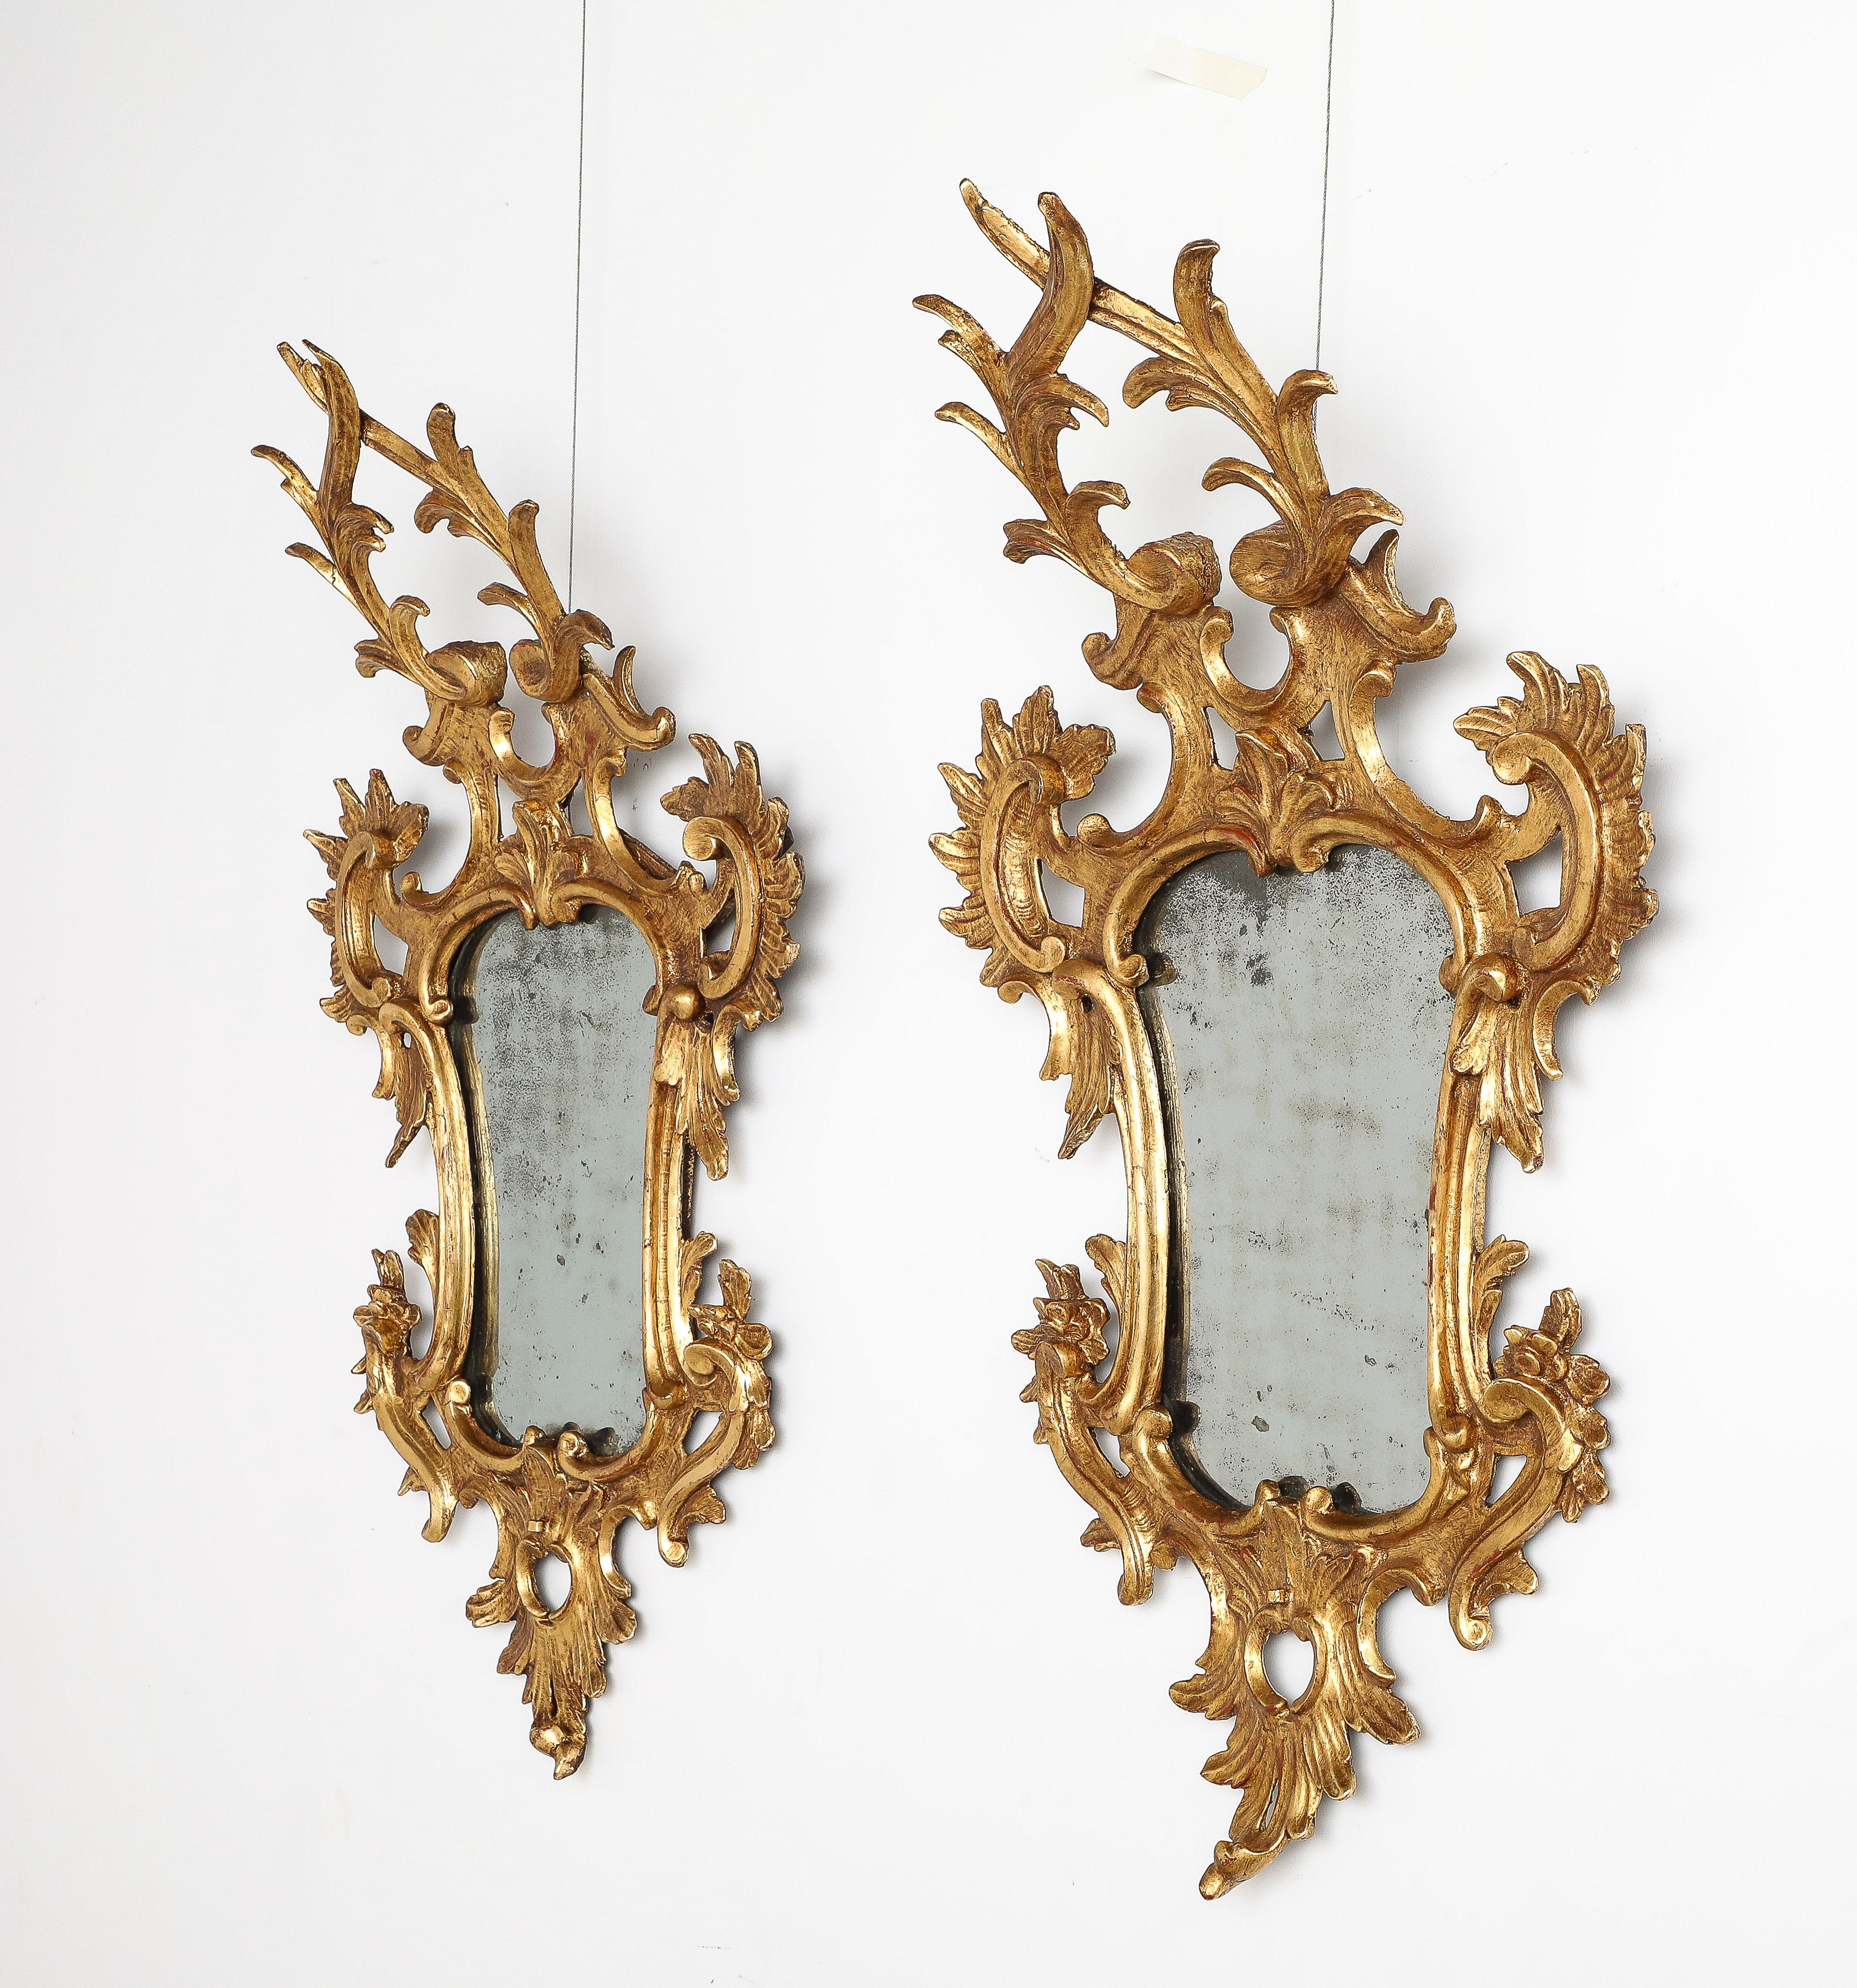 Ein Paar sehr schöner norditalienischer Rokoko-Spiegel aus geschnitztem und vergoldetem Holz.  Von großem Ausmaß und kunstvoll geschnitzt in symmetrischer Form mit Blumen, Rankenwerk und Rocaillen. An der Unterseite jedes Spiegels ist noch eine